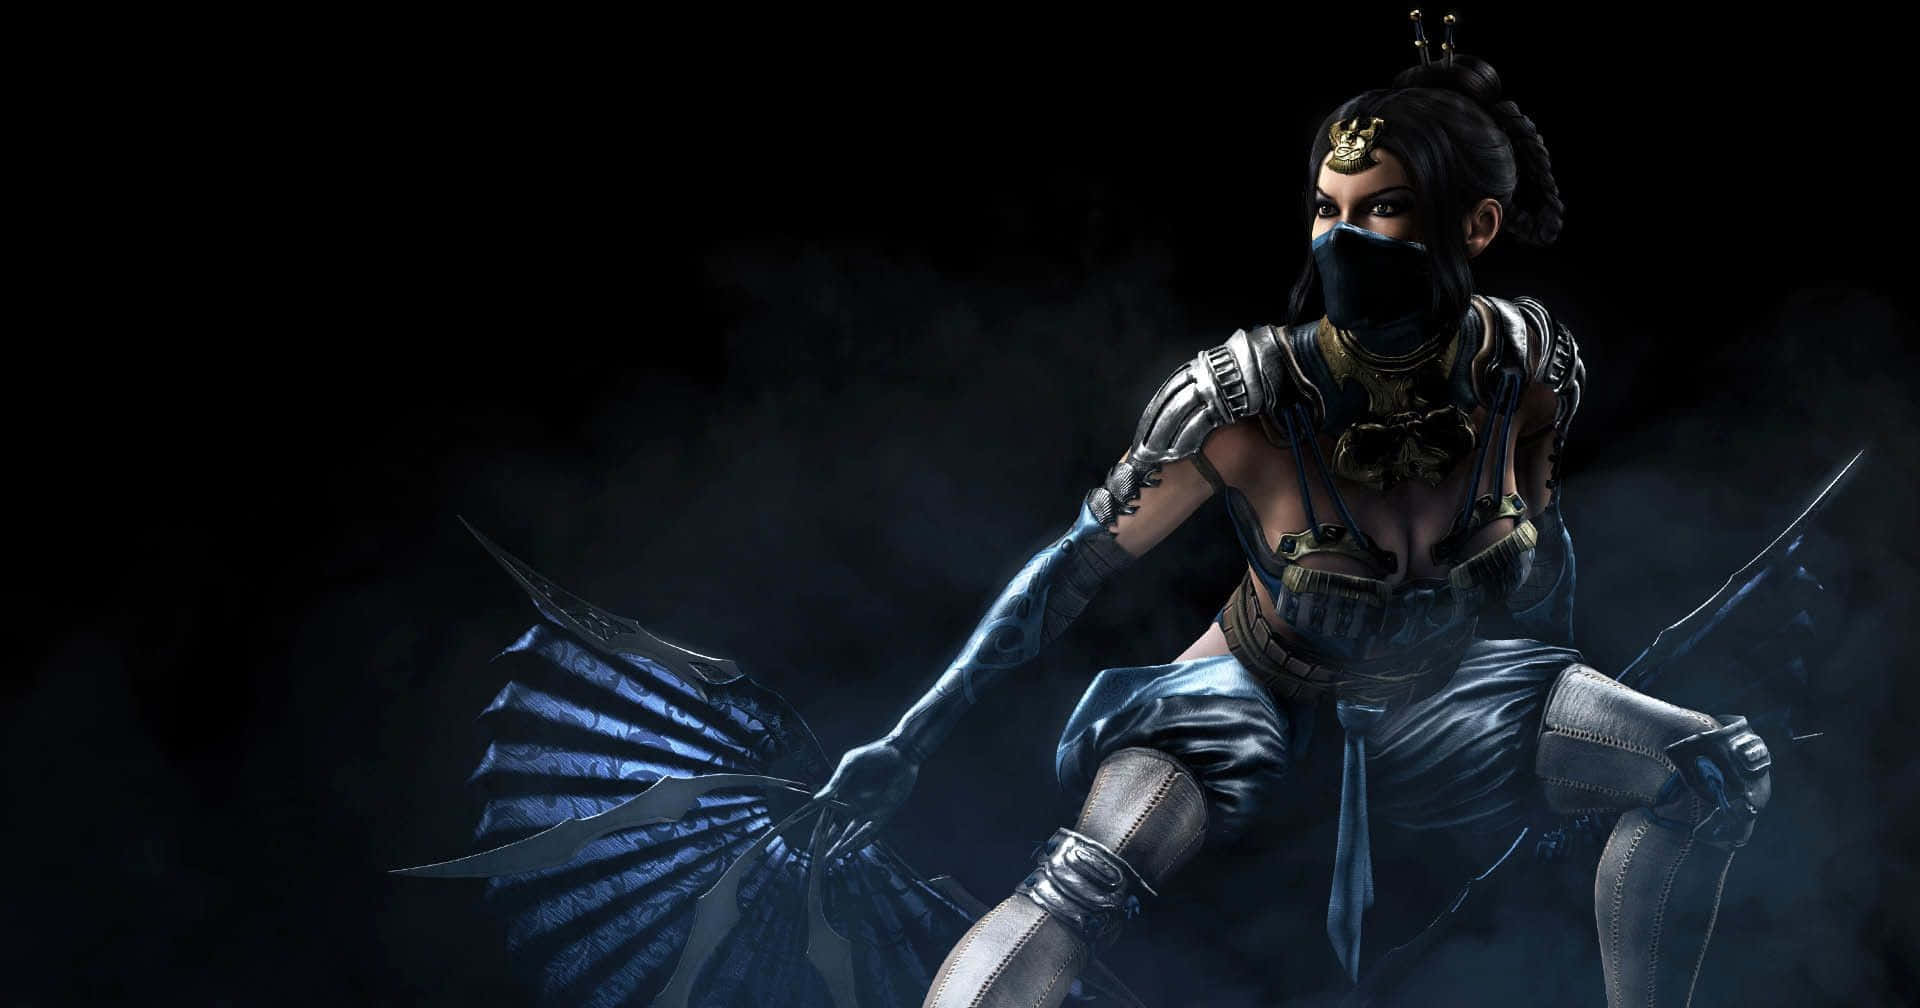 Kitana - The Fearless Princess of Edenia in Mortal Kombat Wallpaper